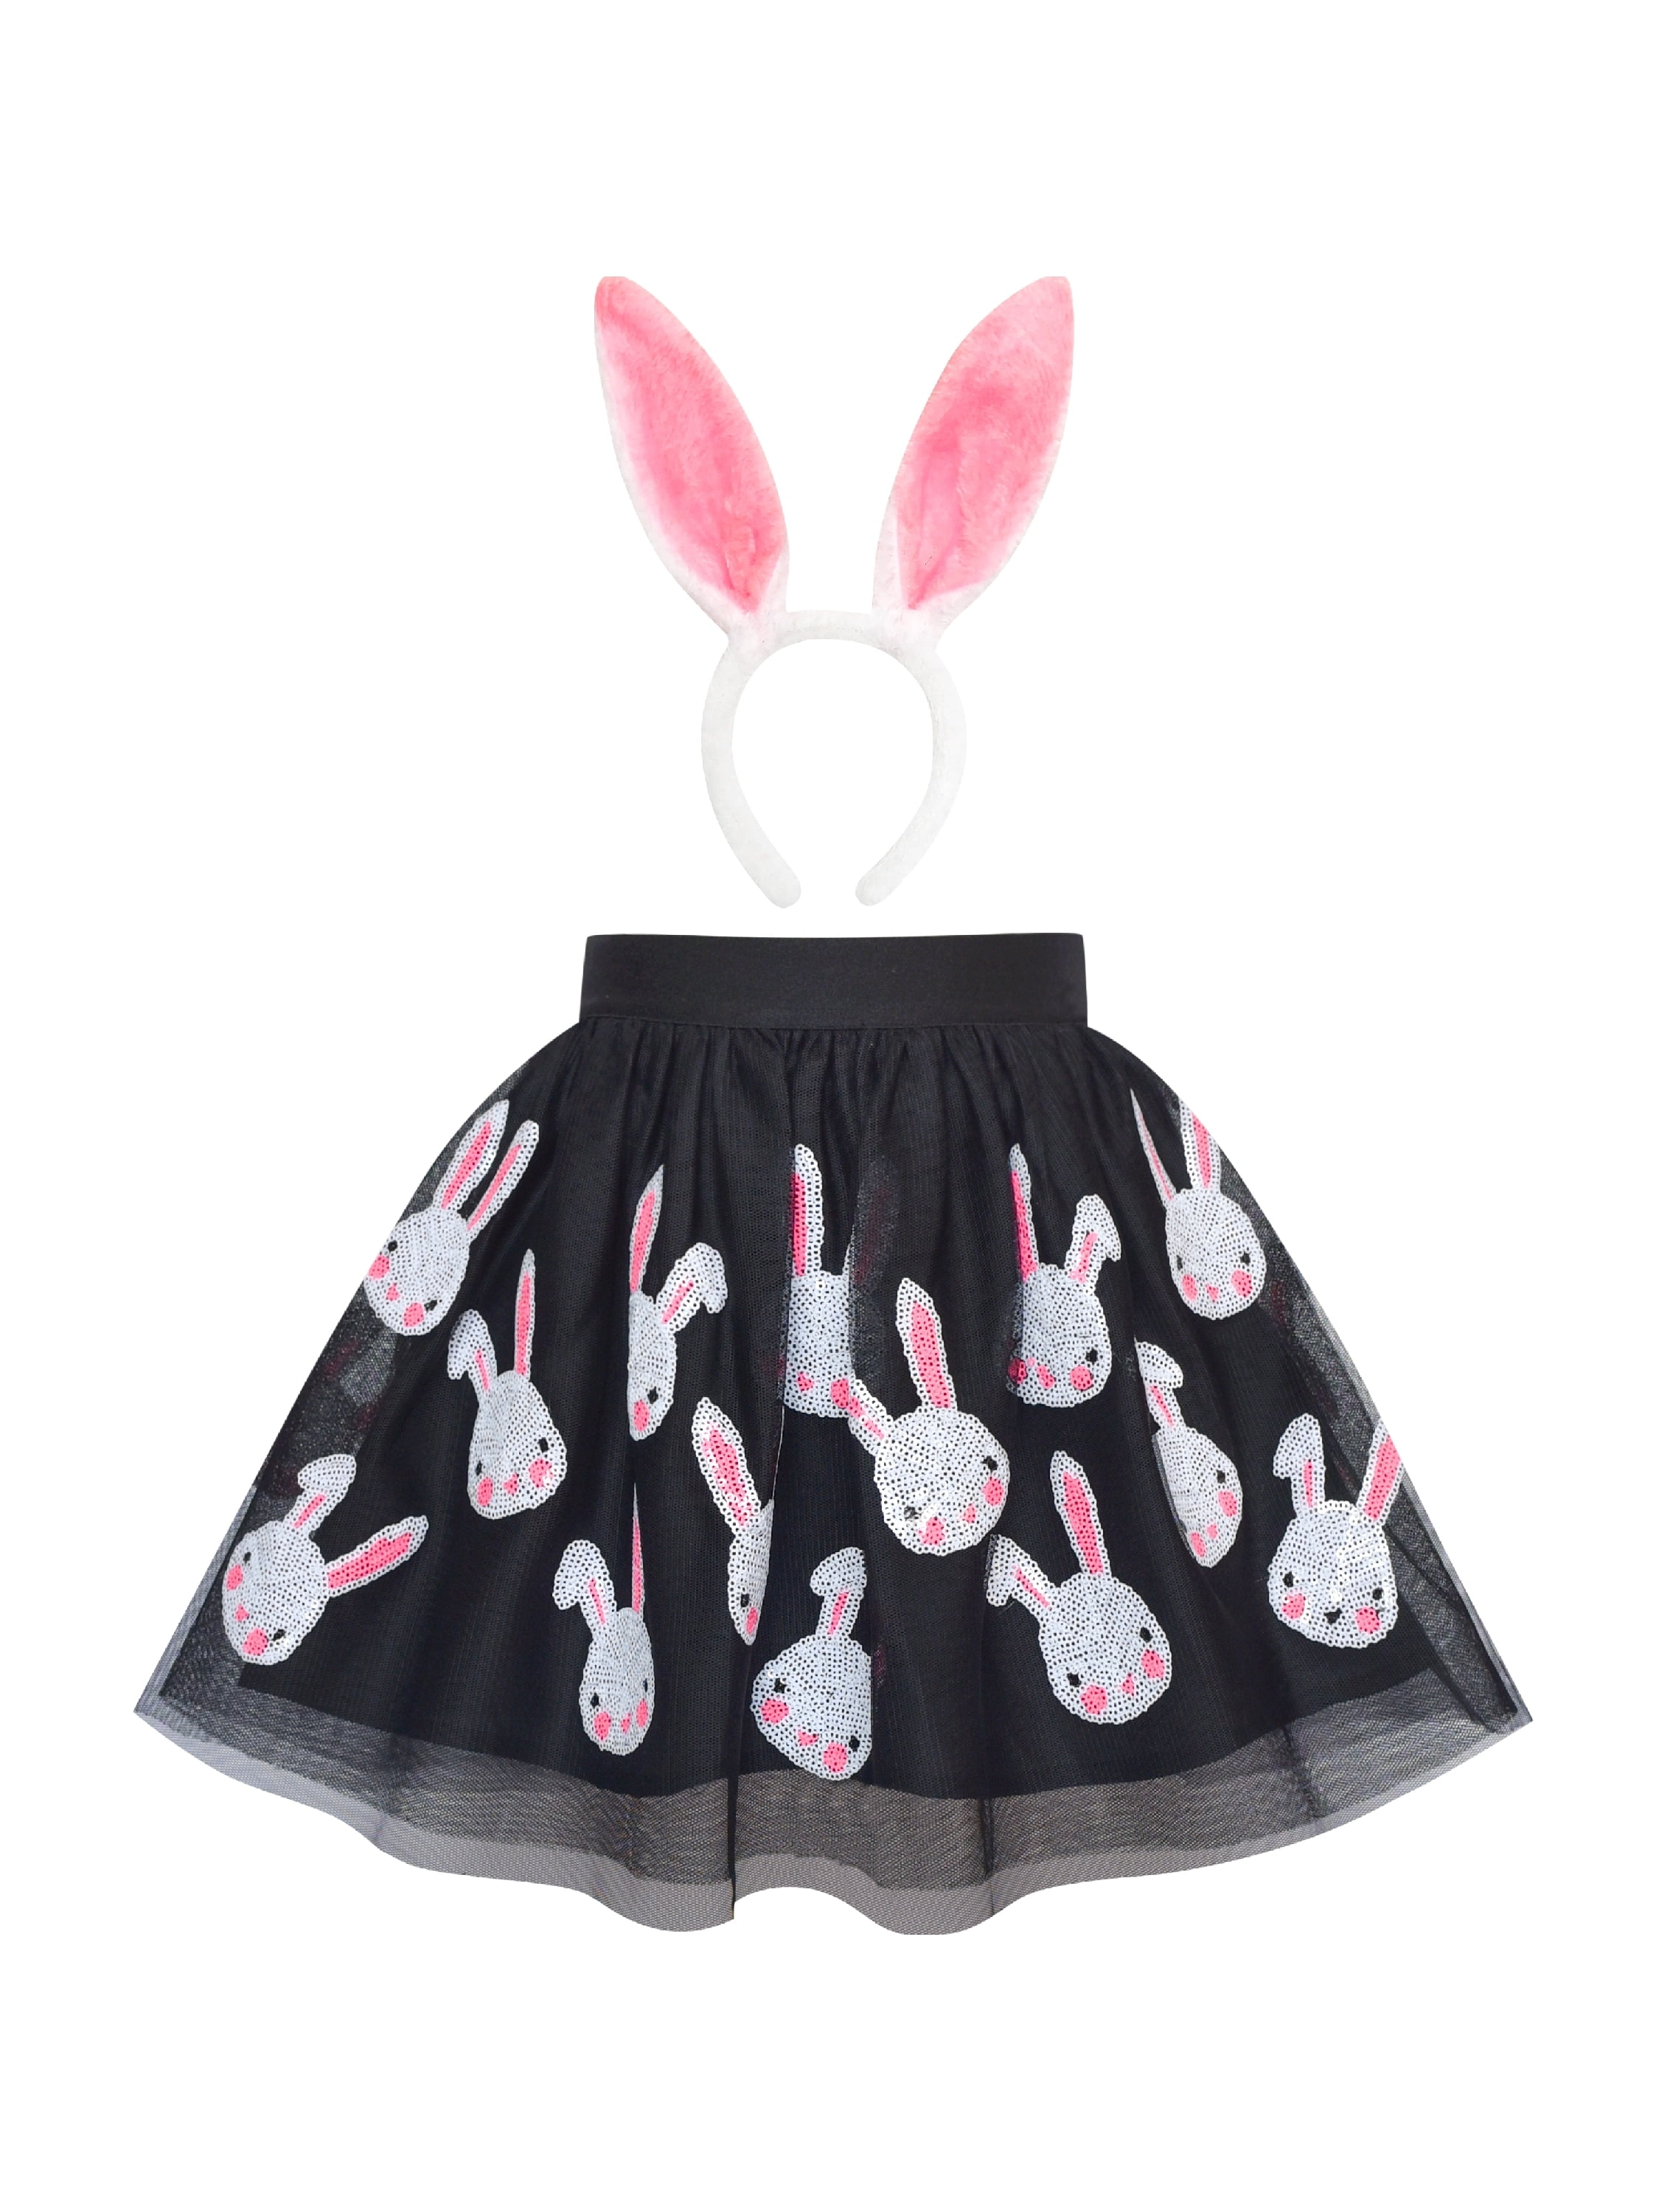 Girls Dress Black Bunny Skirt Rabbit Easter Skirt 2-3 Years 